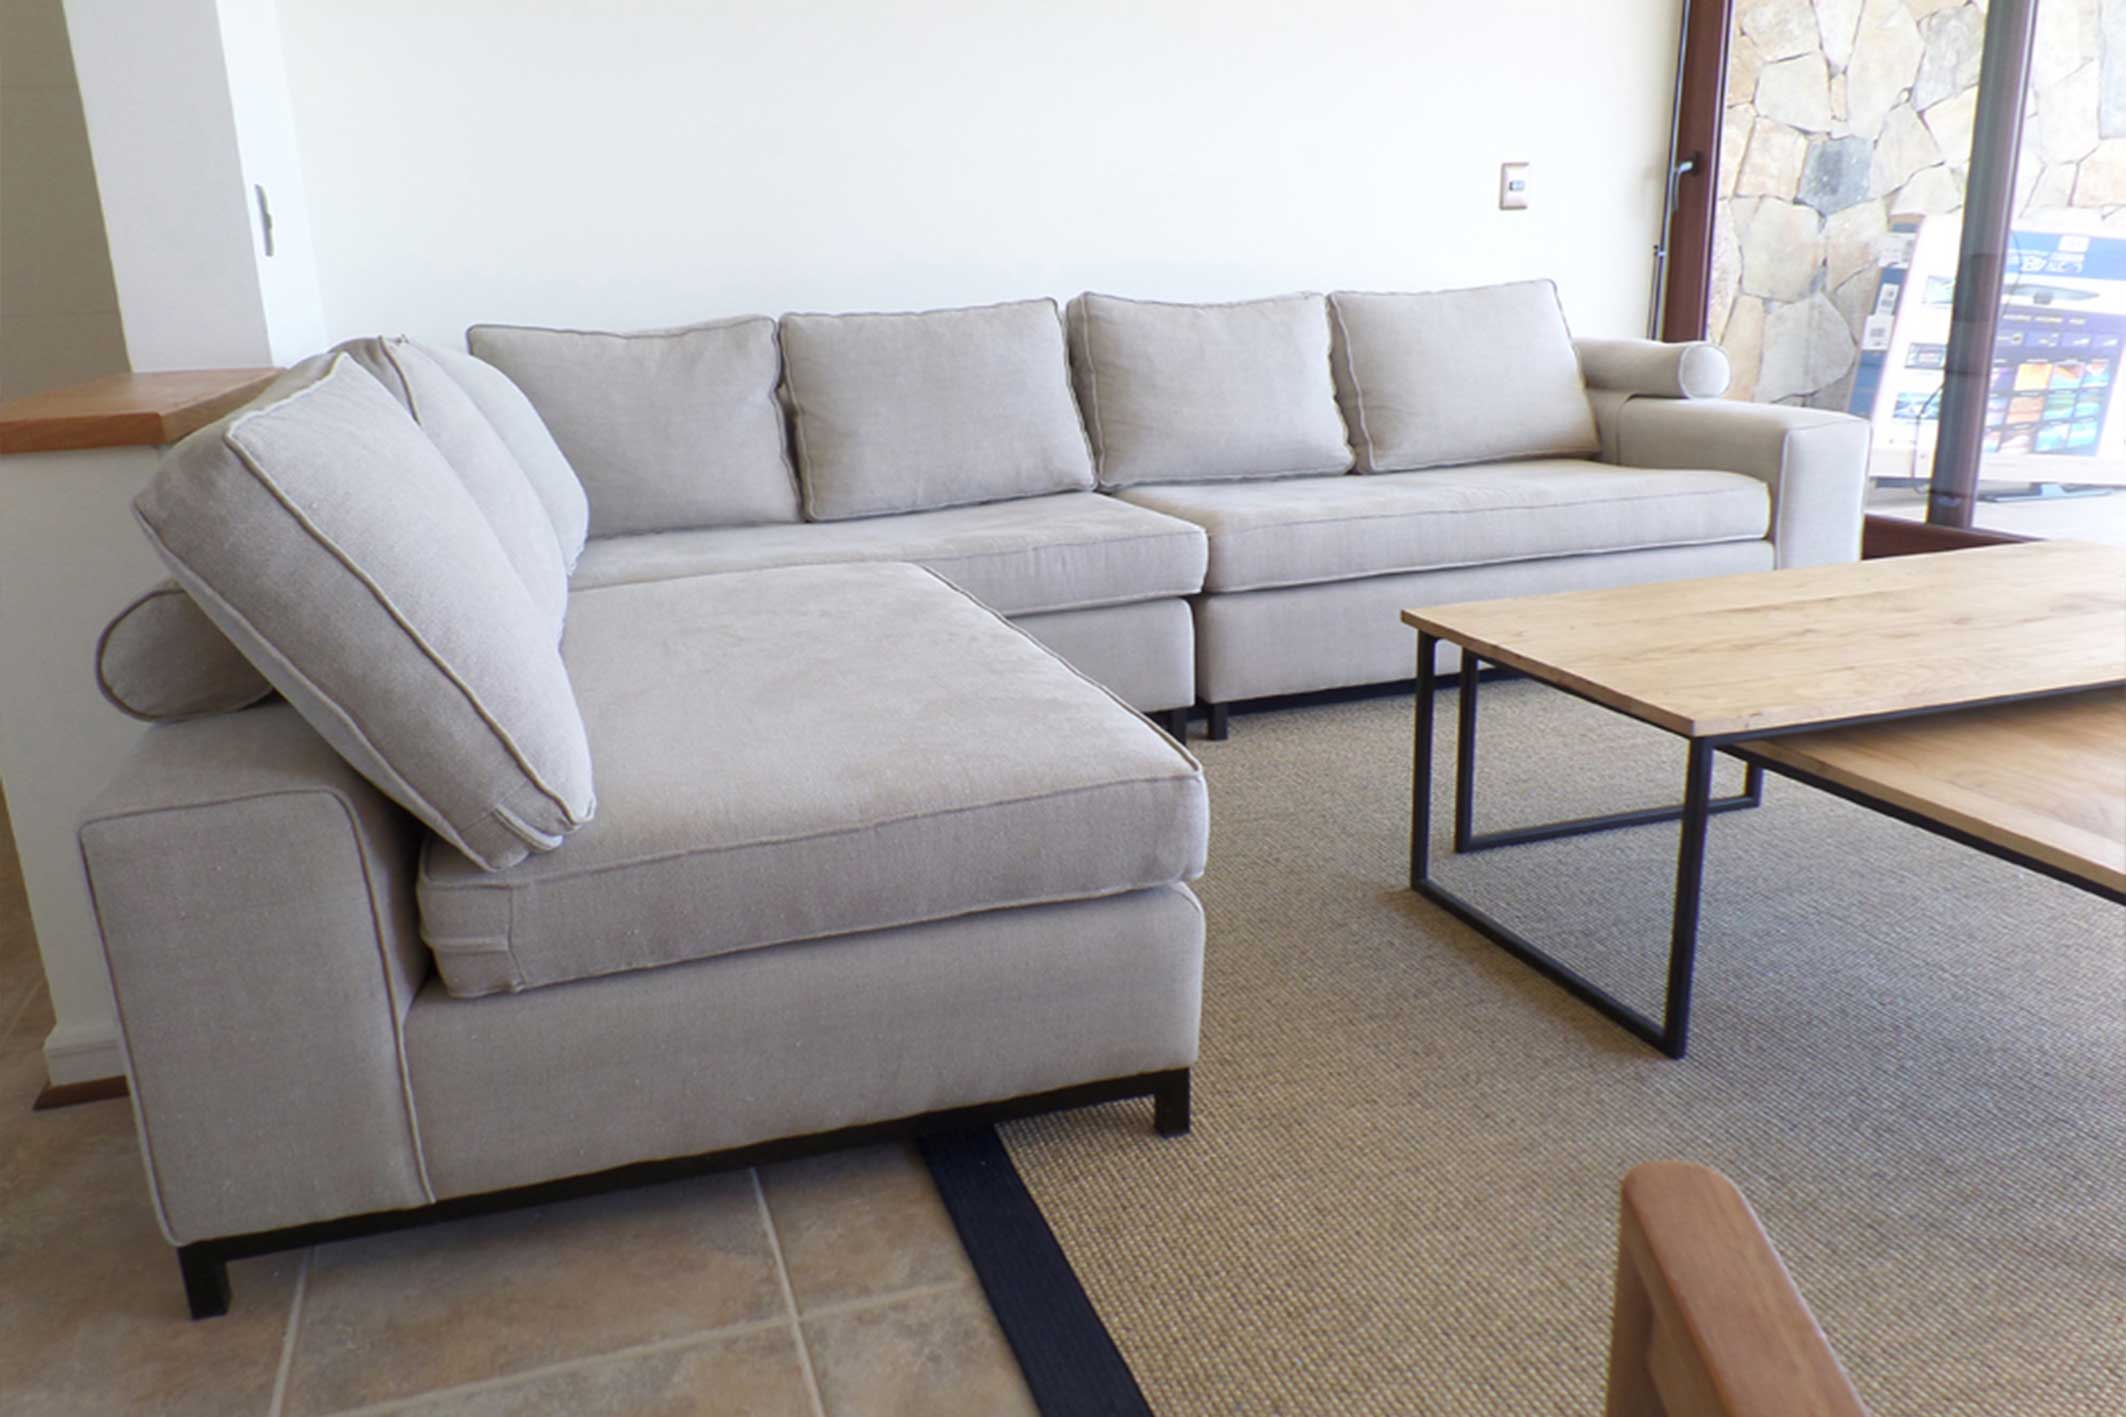 El sofá modular más apto para tu espacio | sofaonline